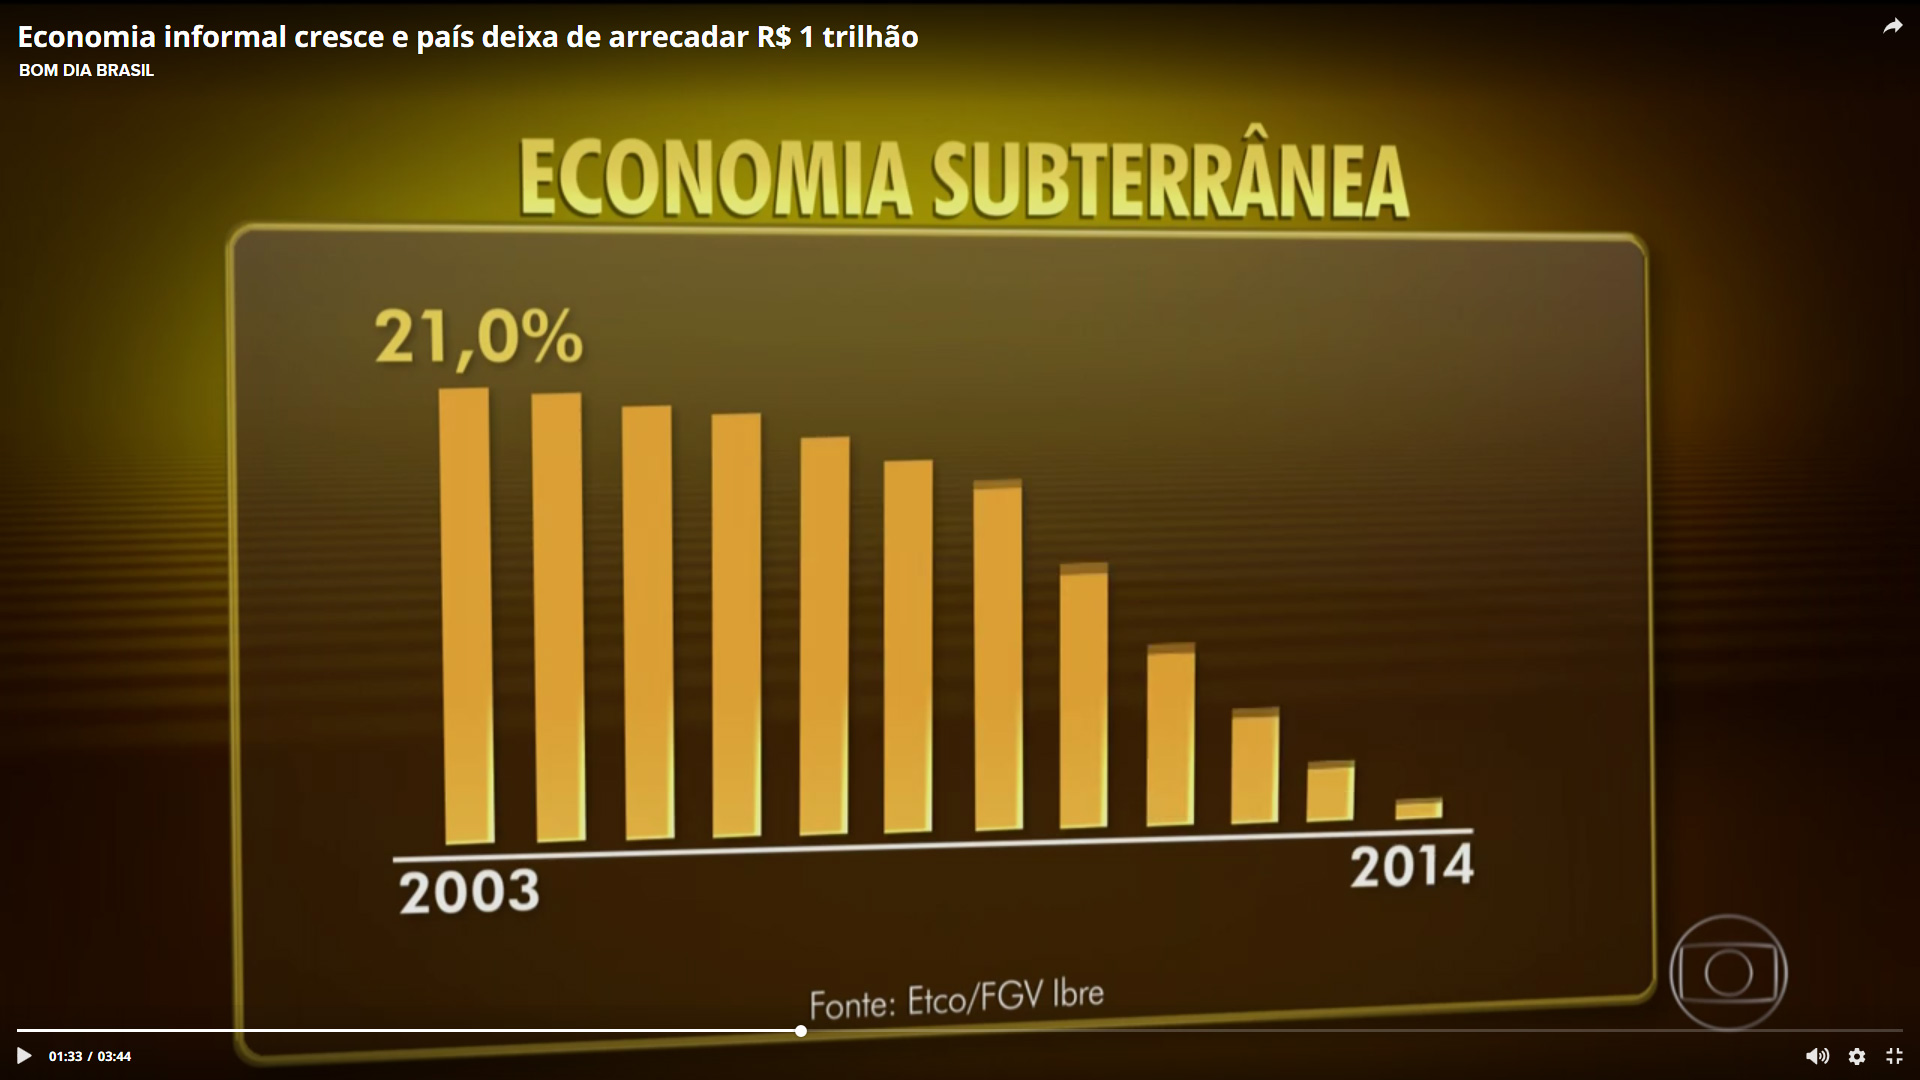 Economia informal cresce e Brasil deixa de arrecadar R$ 1 trilhão no ano -  ETCO